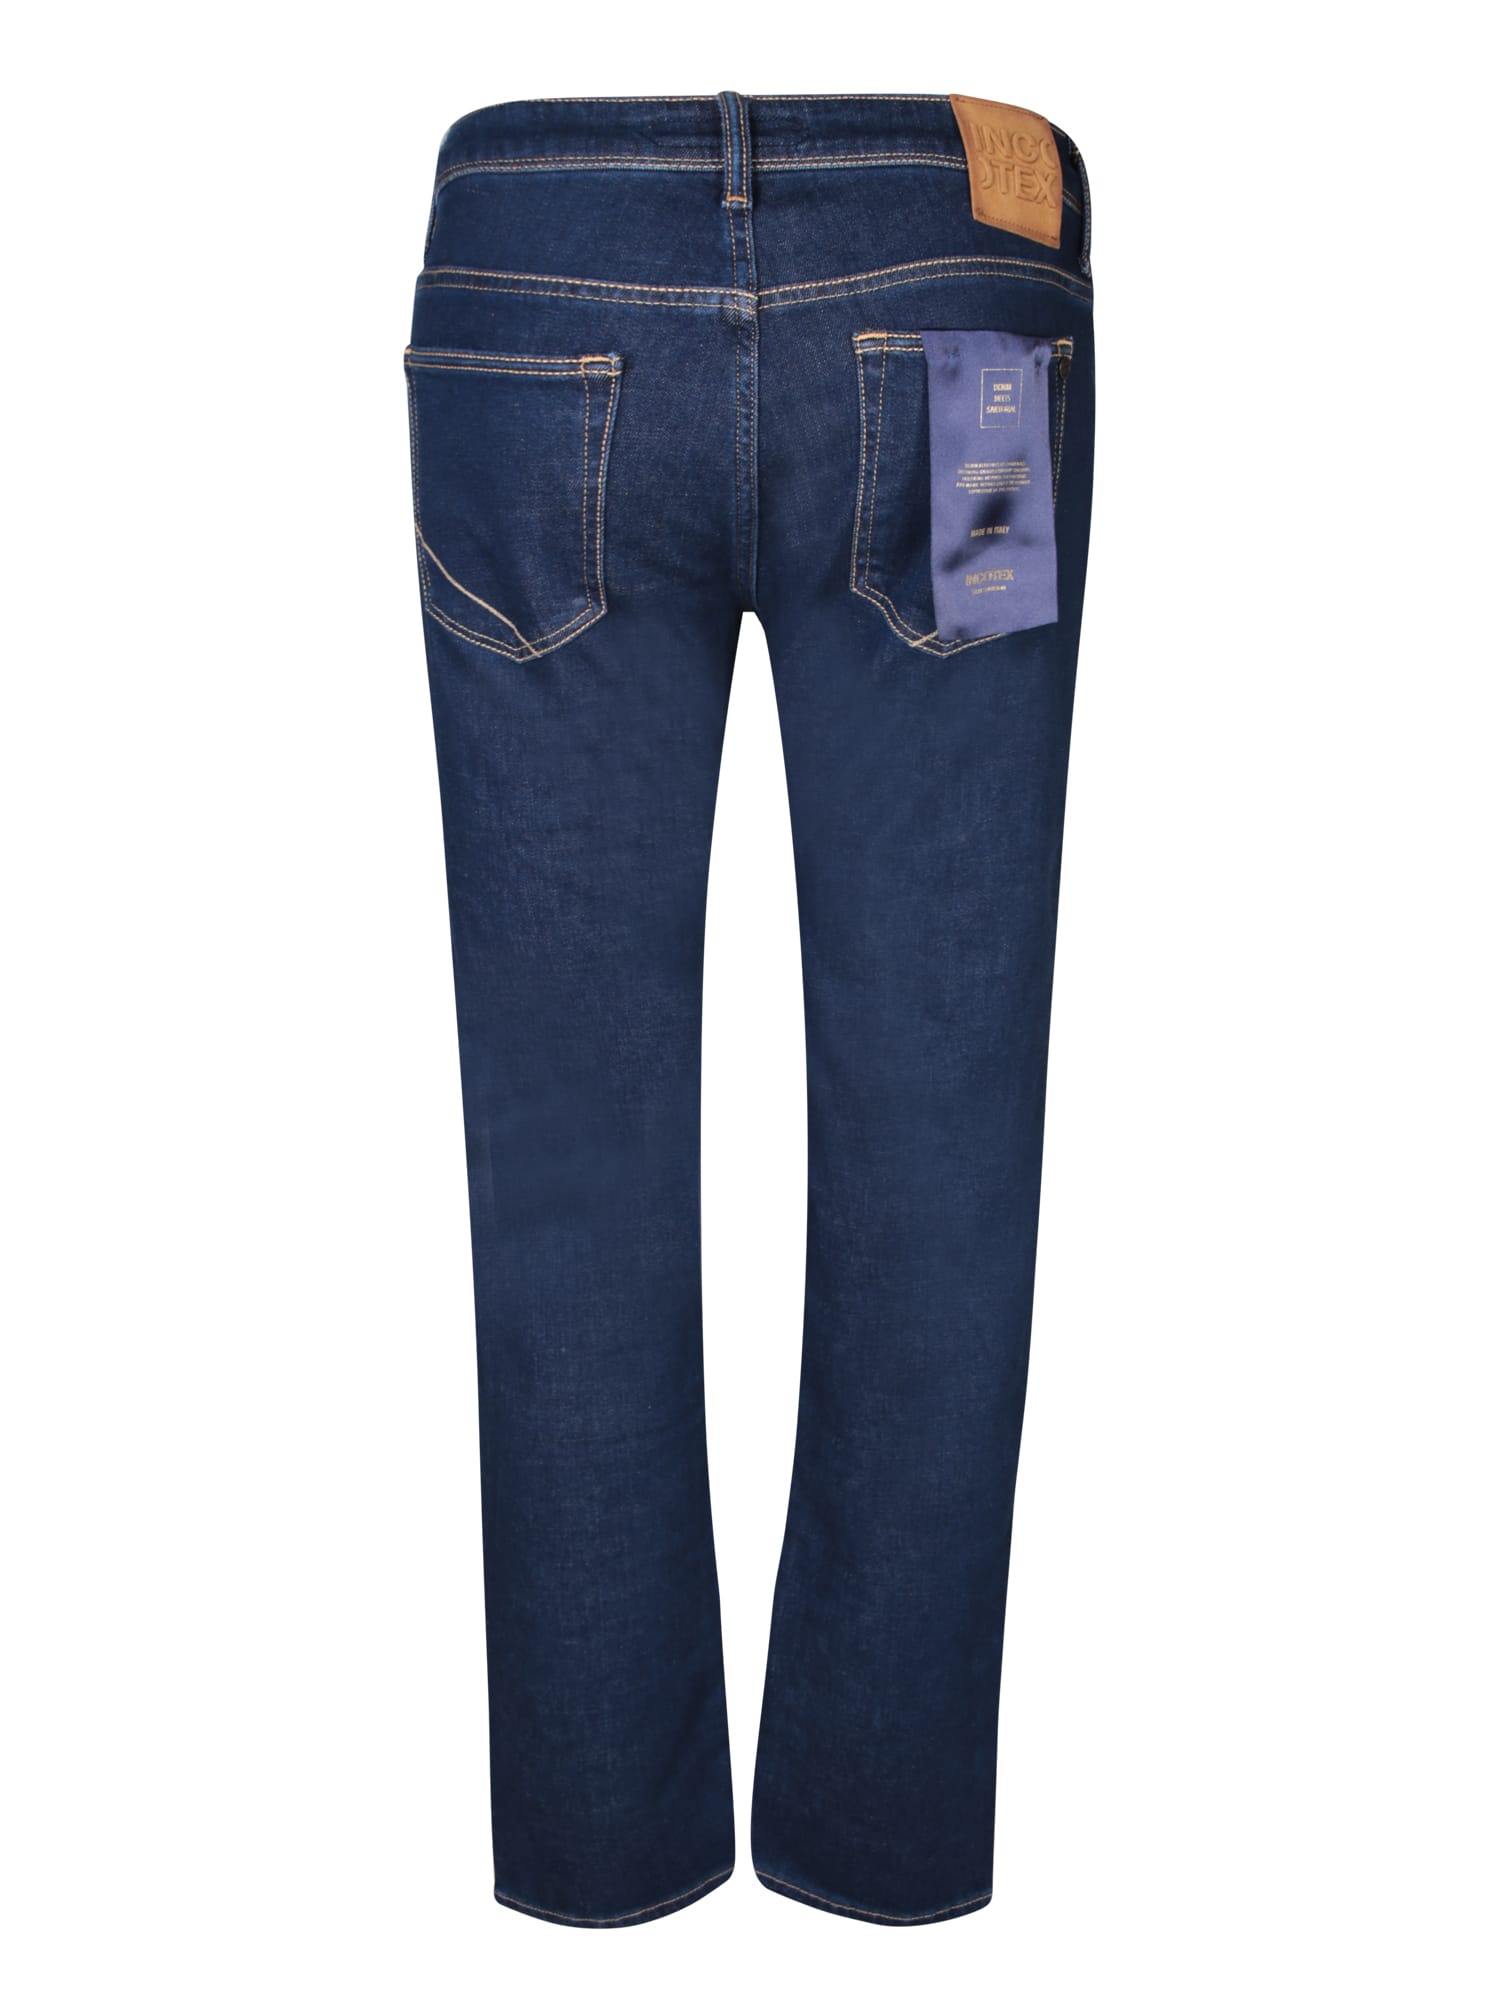 Shop Incotex 5t Blue Denim Jeans